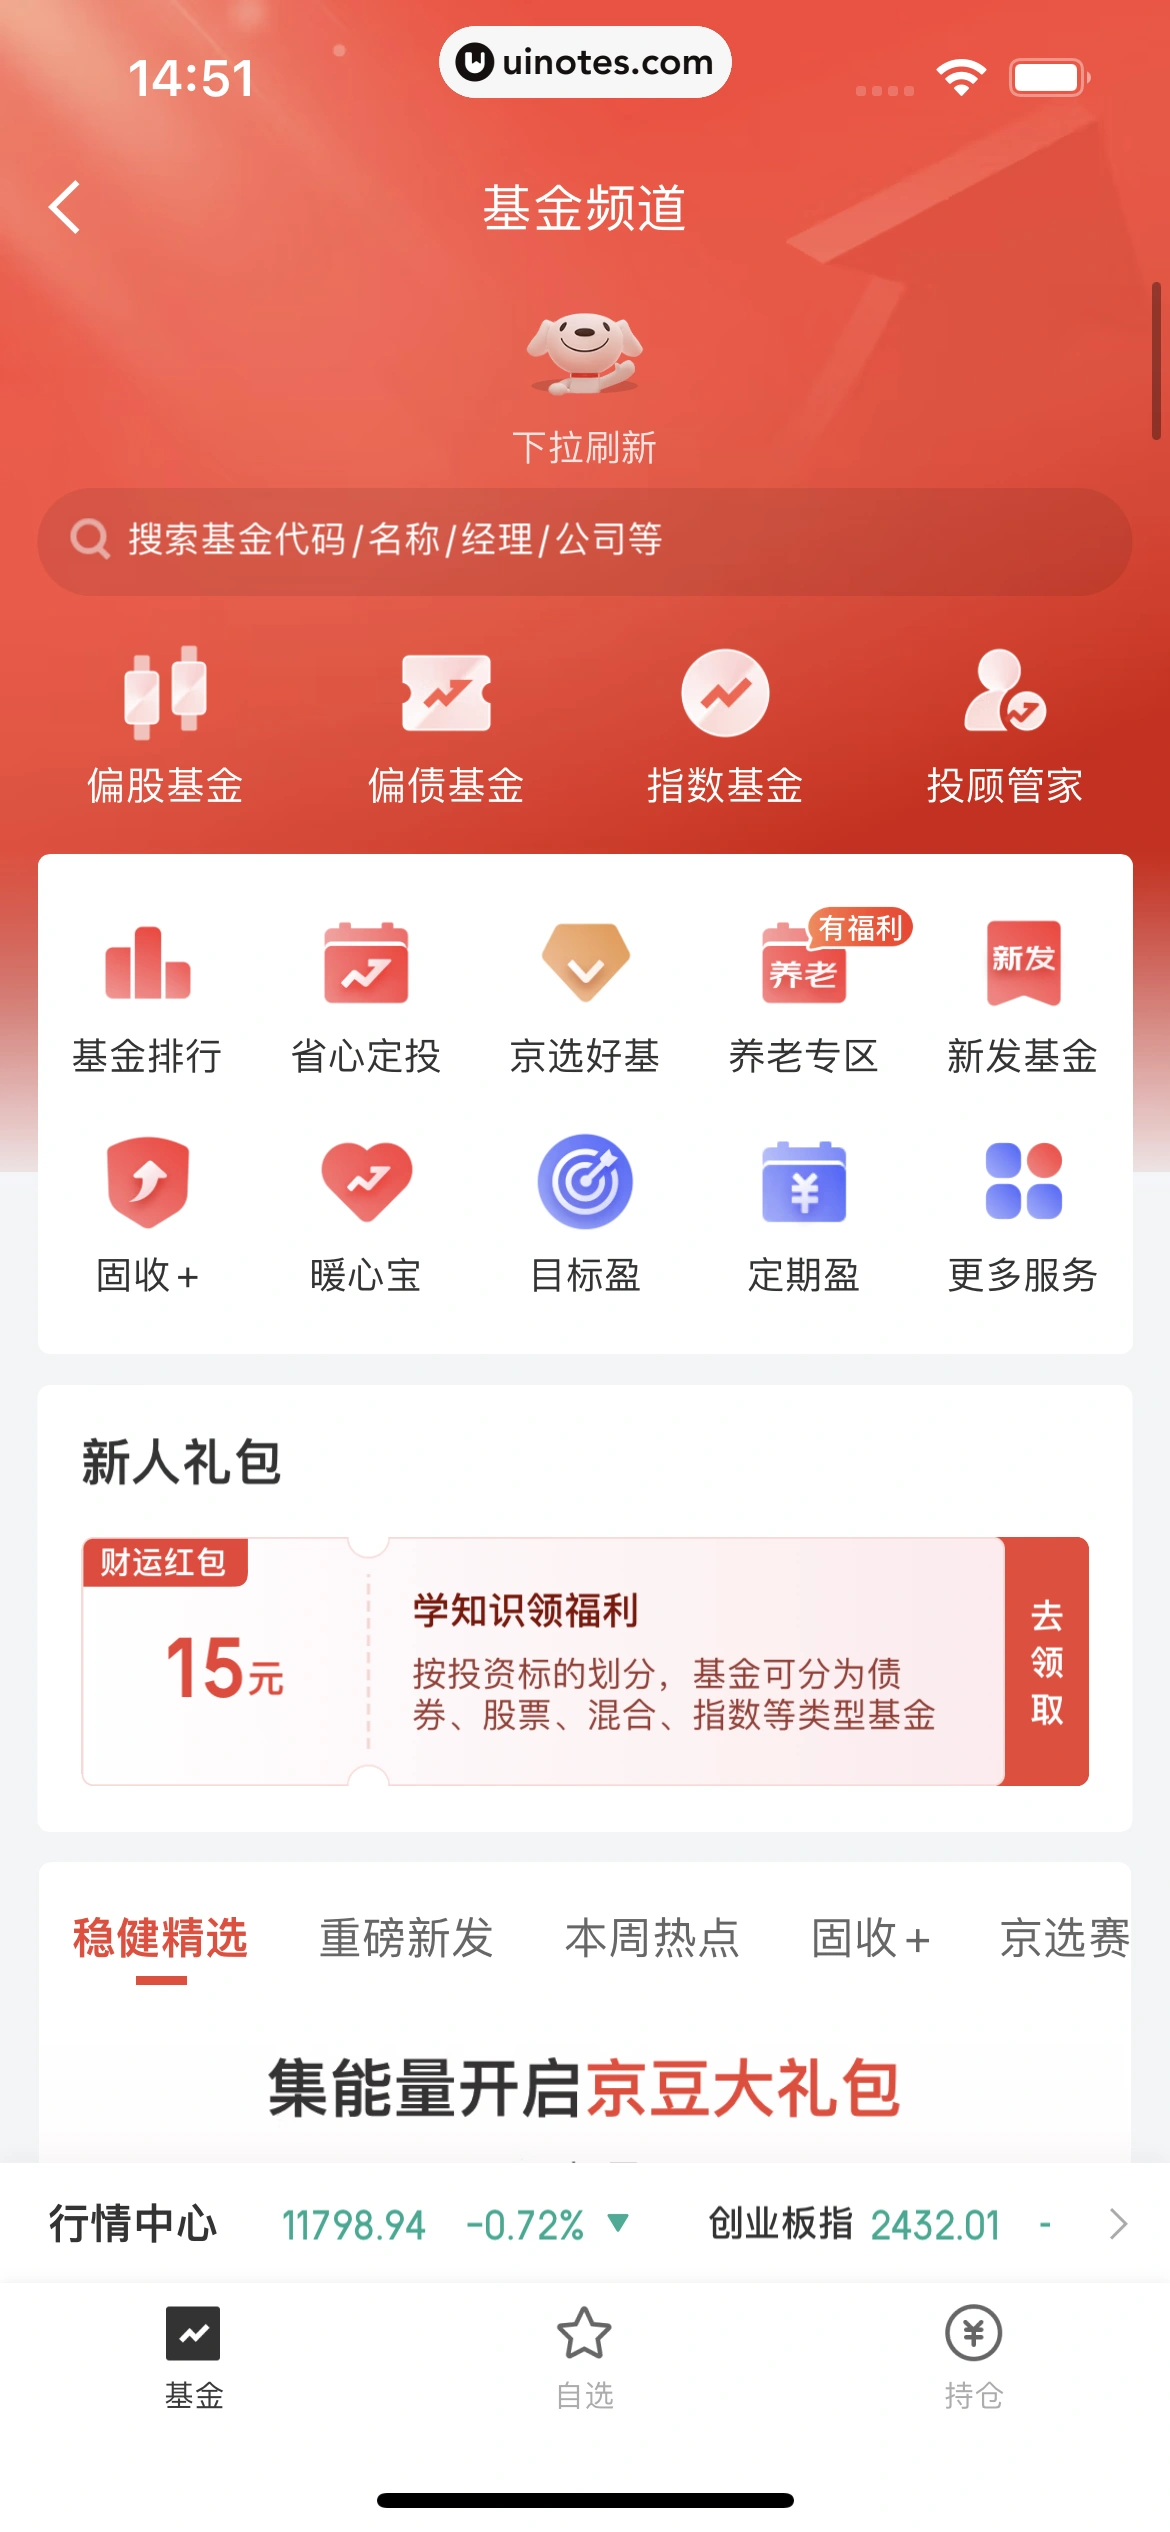 京东金融 App 截图 045 - UI Notes